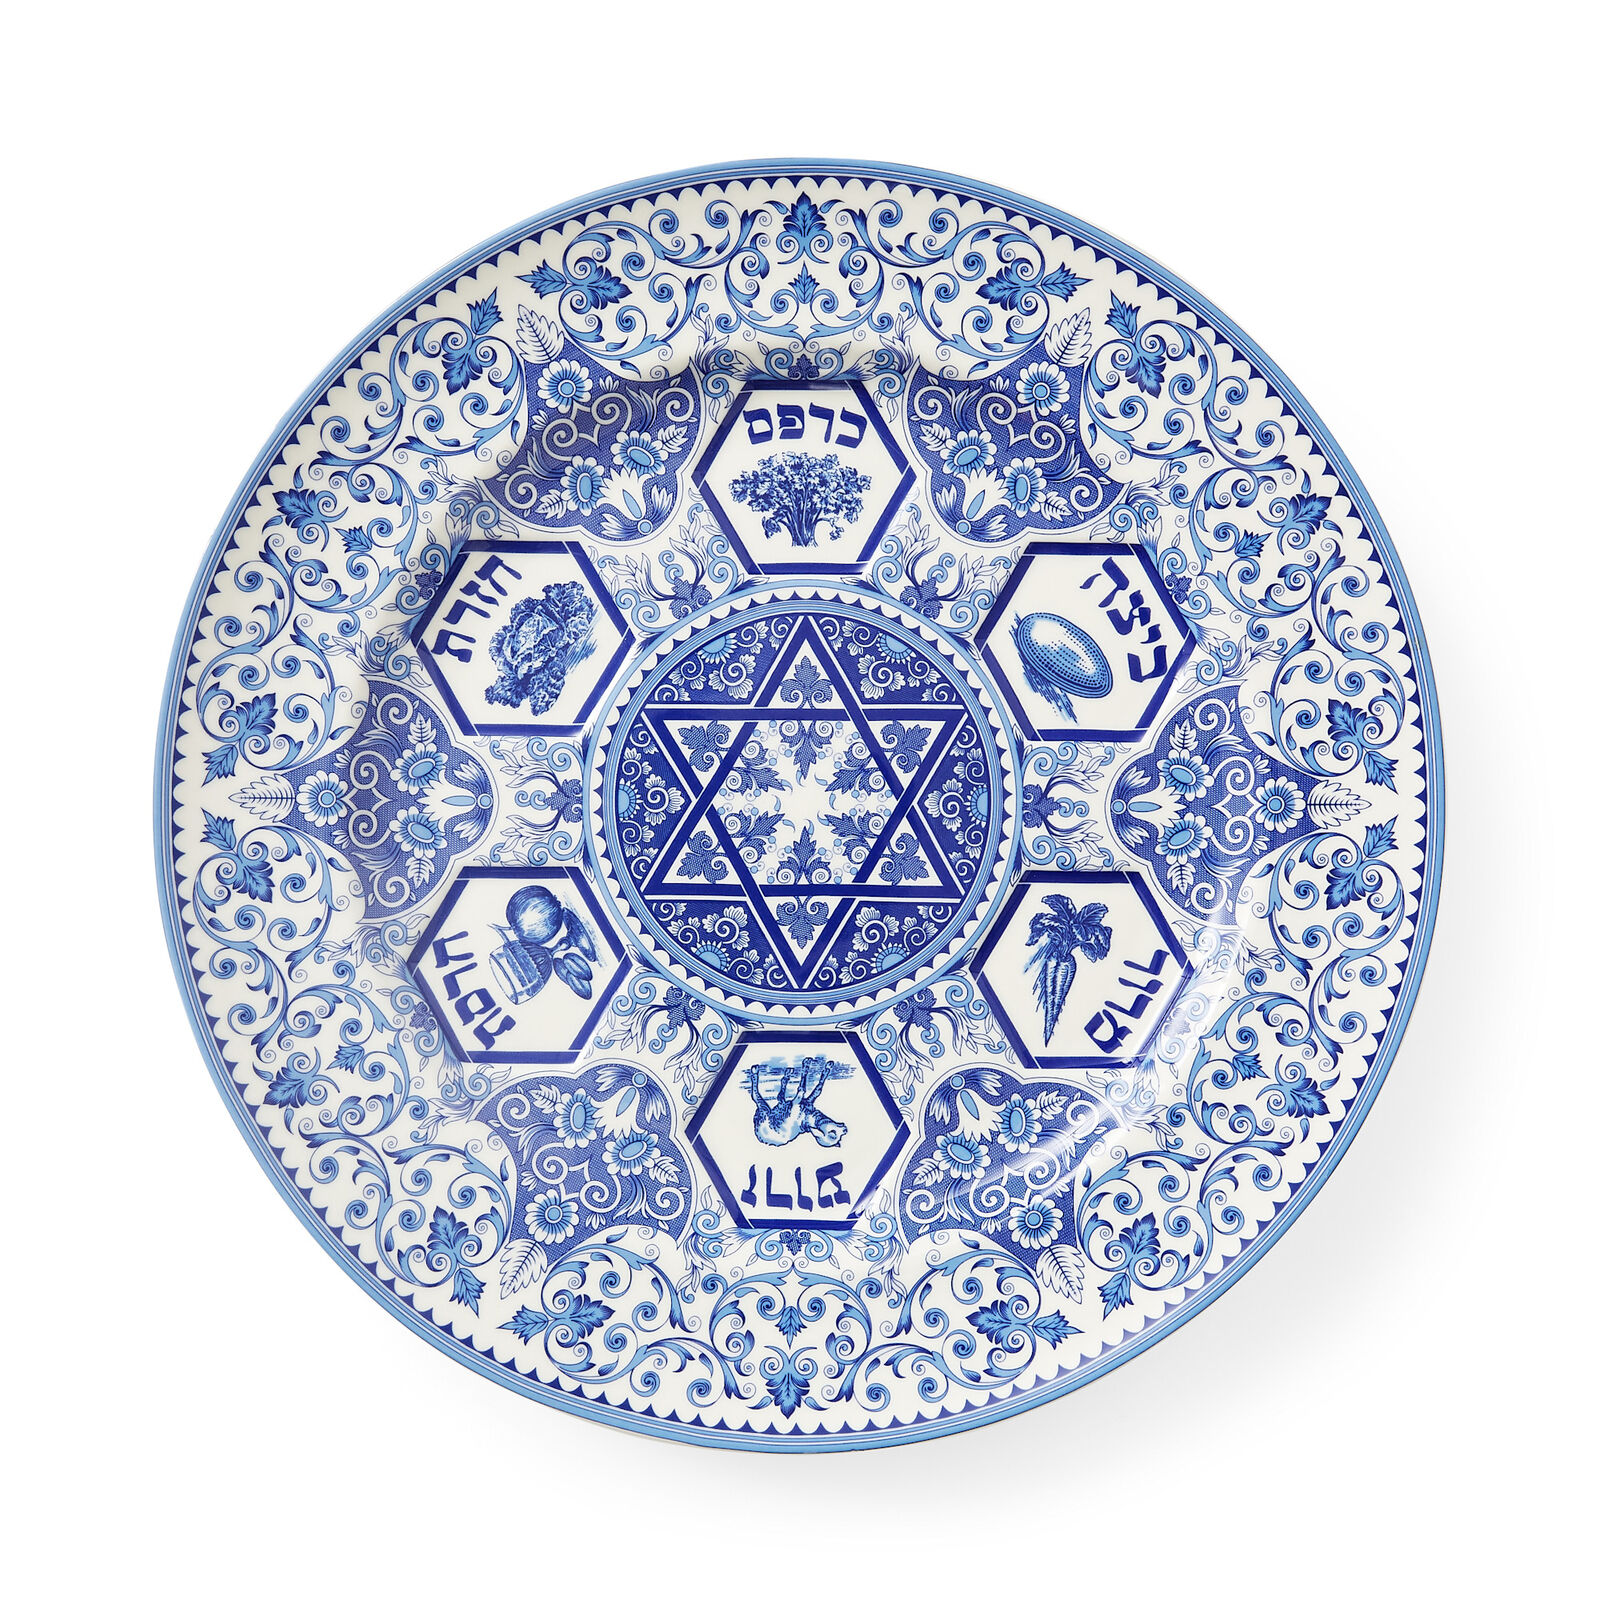 Spode Judaica Passover Seder Plate 12 Inch, Made of Fine Porcelain